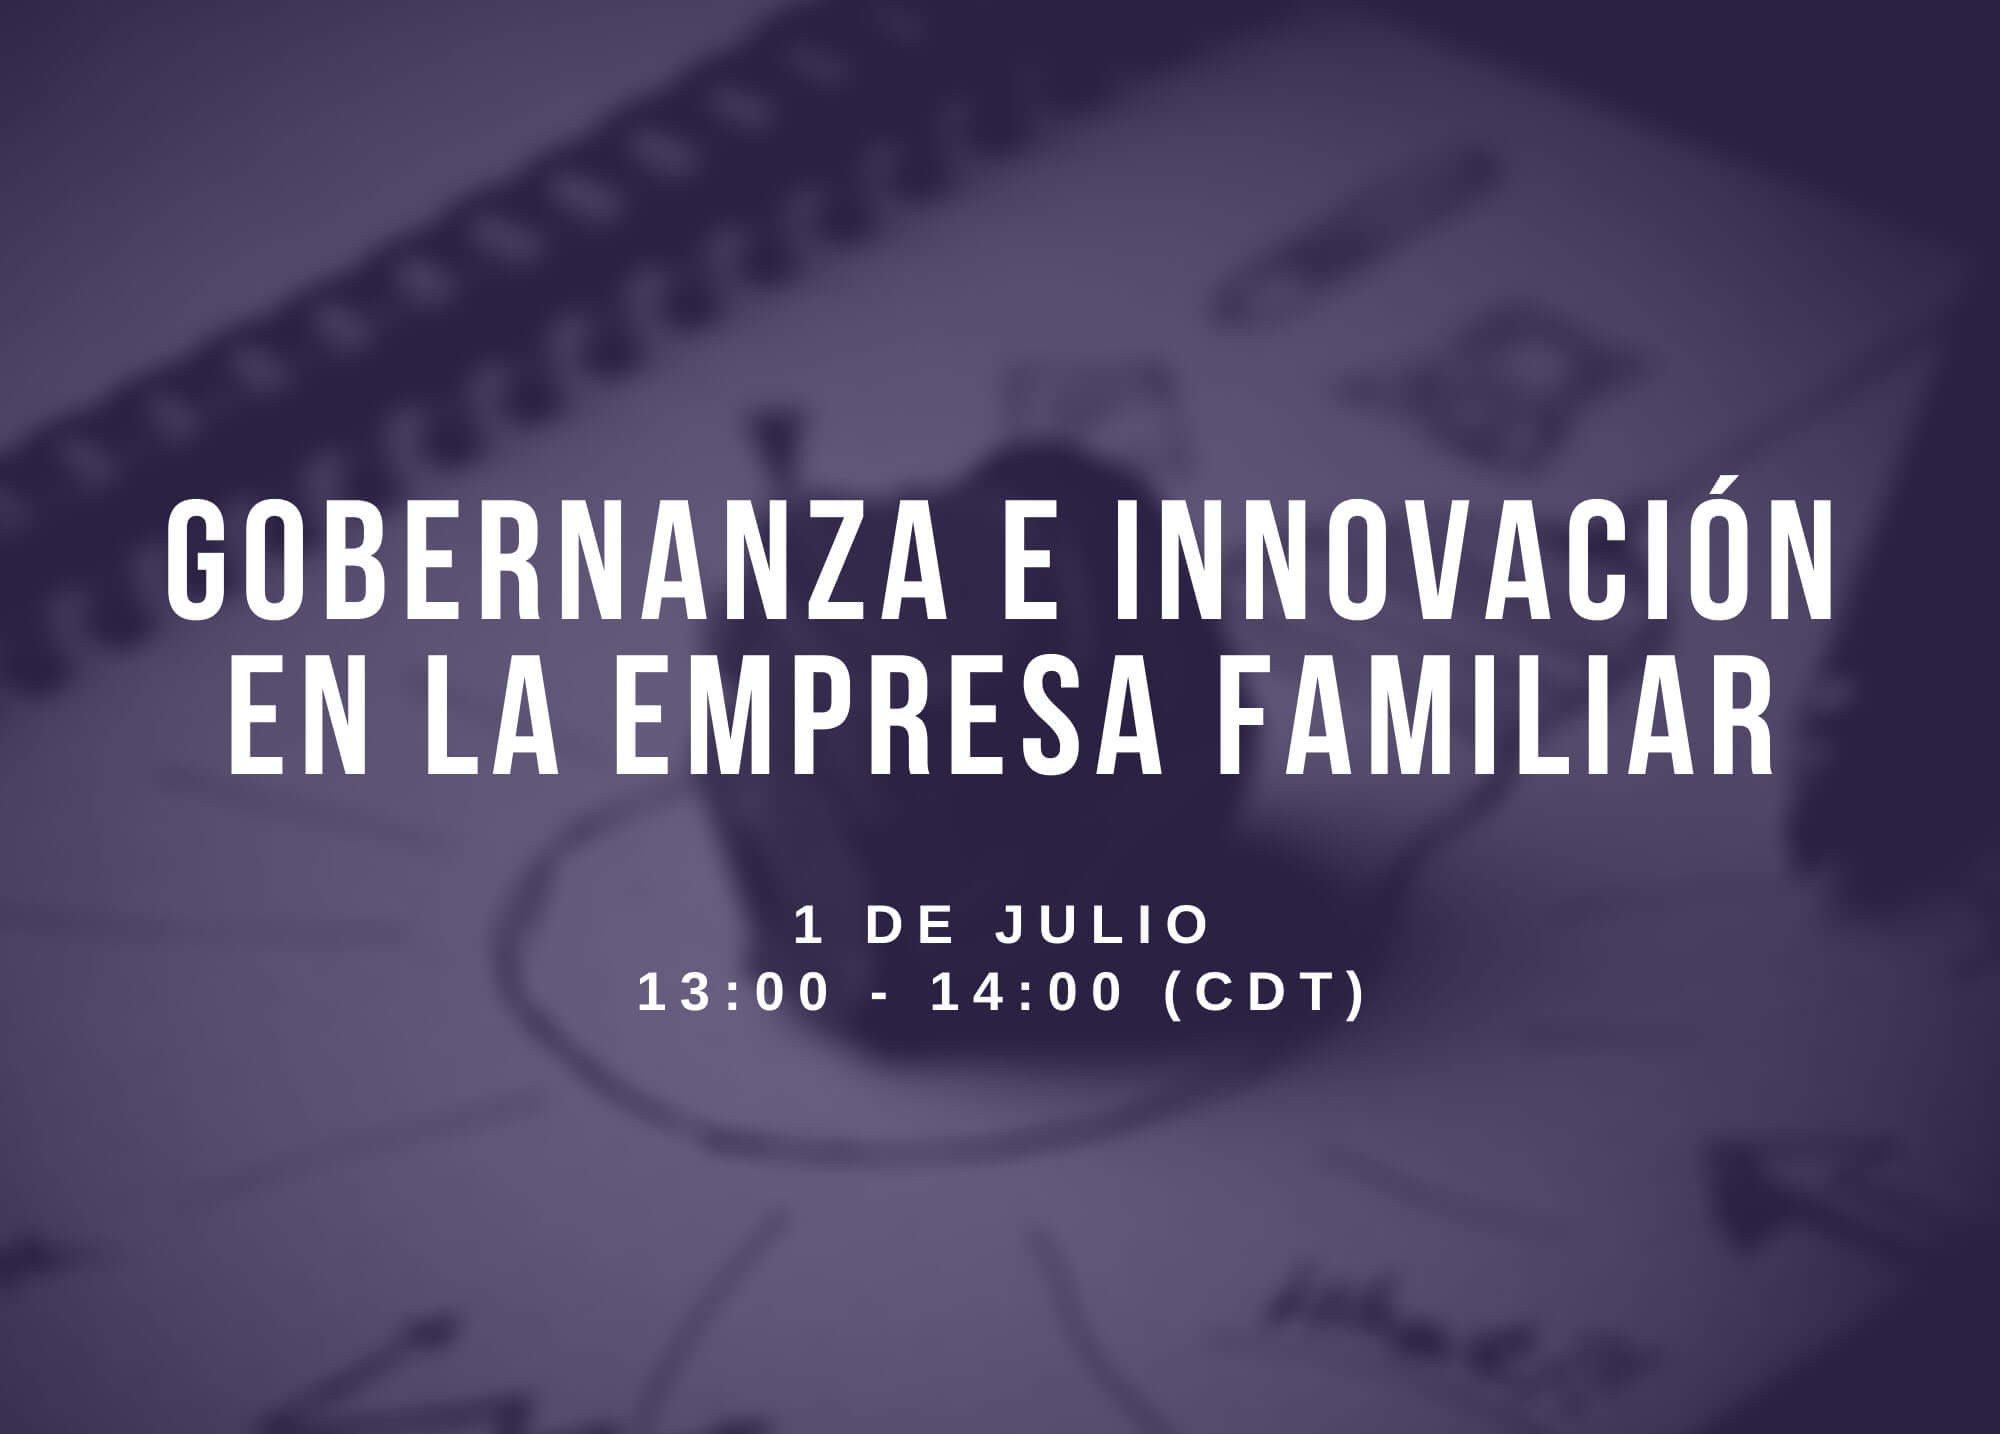 Gobernanza e innovación en la empresa familiar